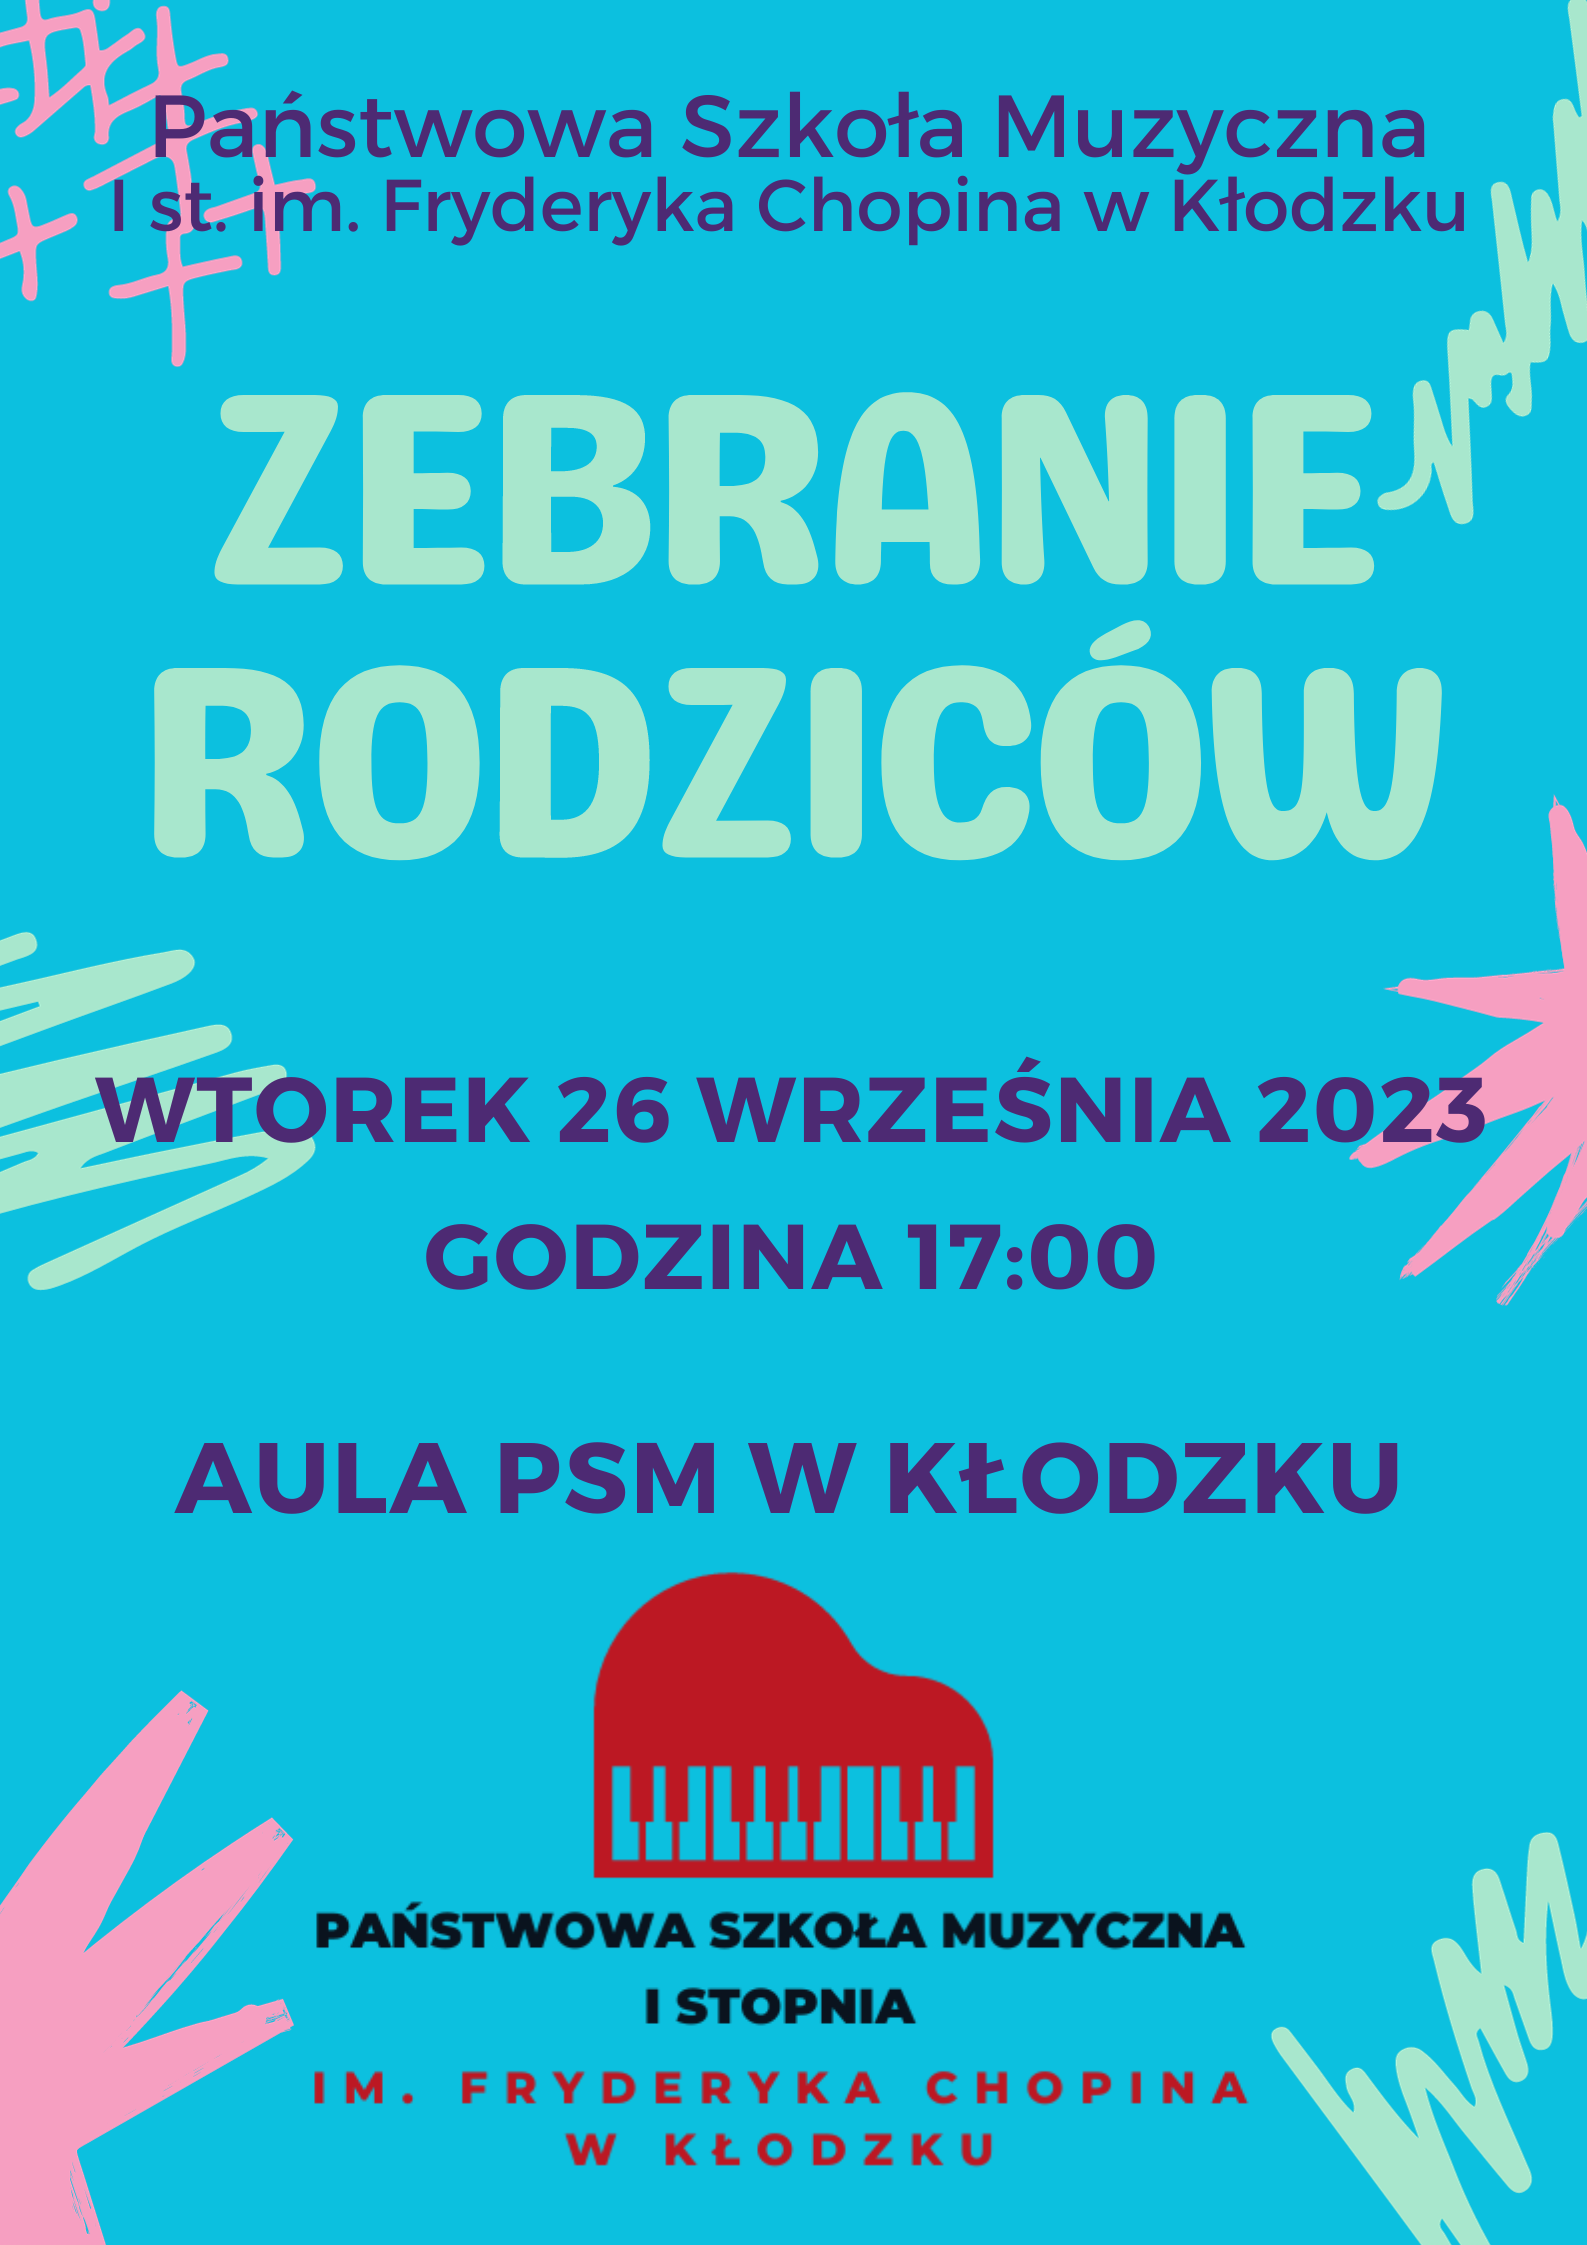 Plakat na niebieskim tle z informacją tekstową dotyczącą zebrania rodziców w PSM w Kłodzku dnia 26 września o godzinie 17:00